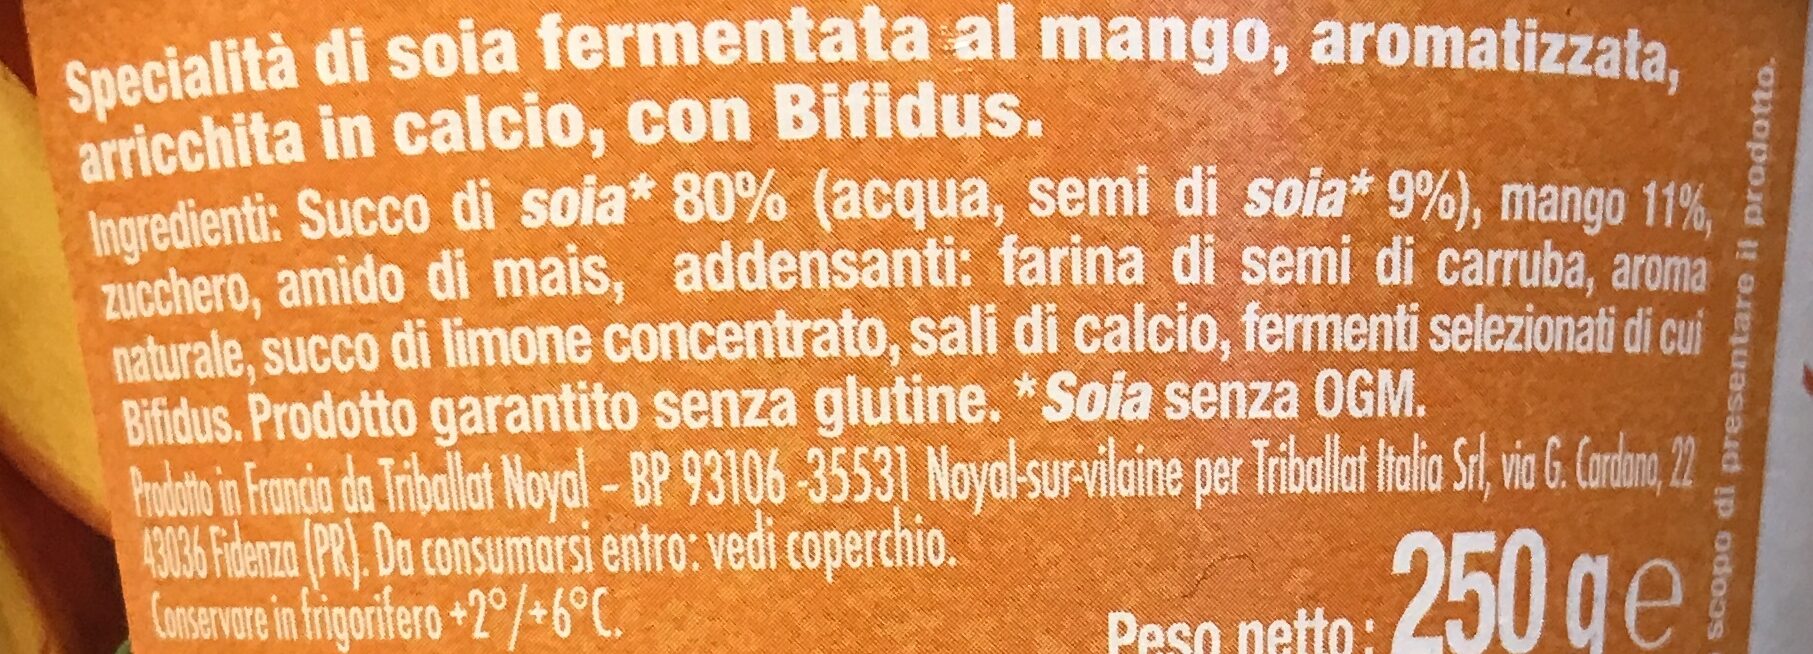 Bifidus mango - Ingredienti